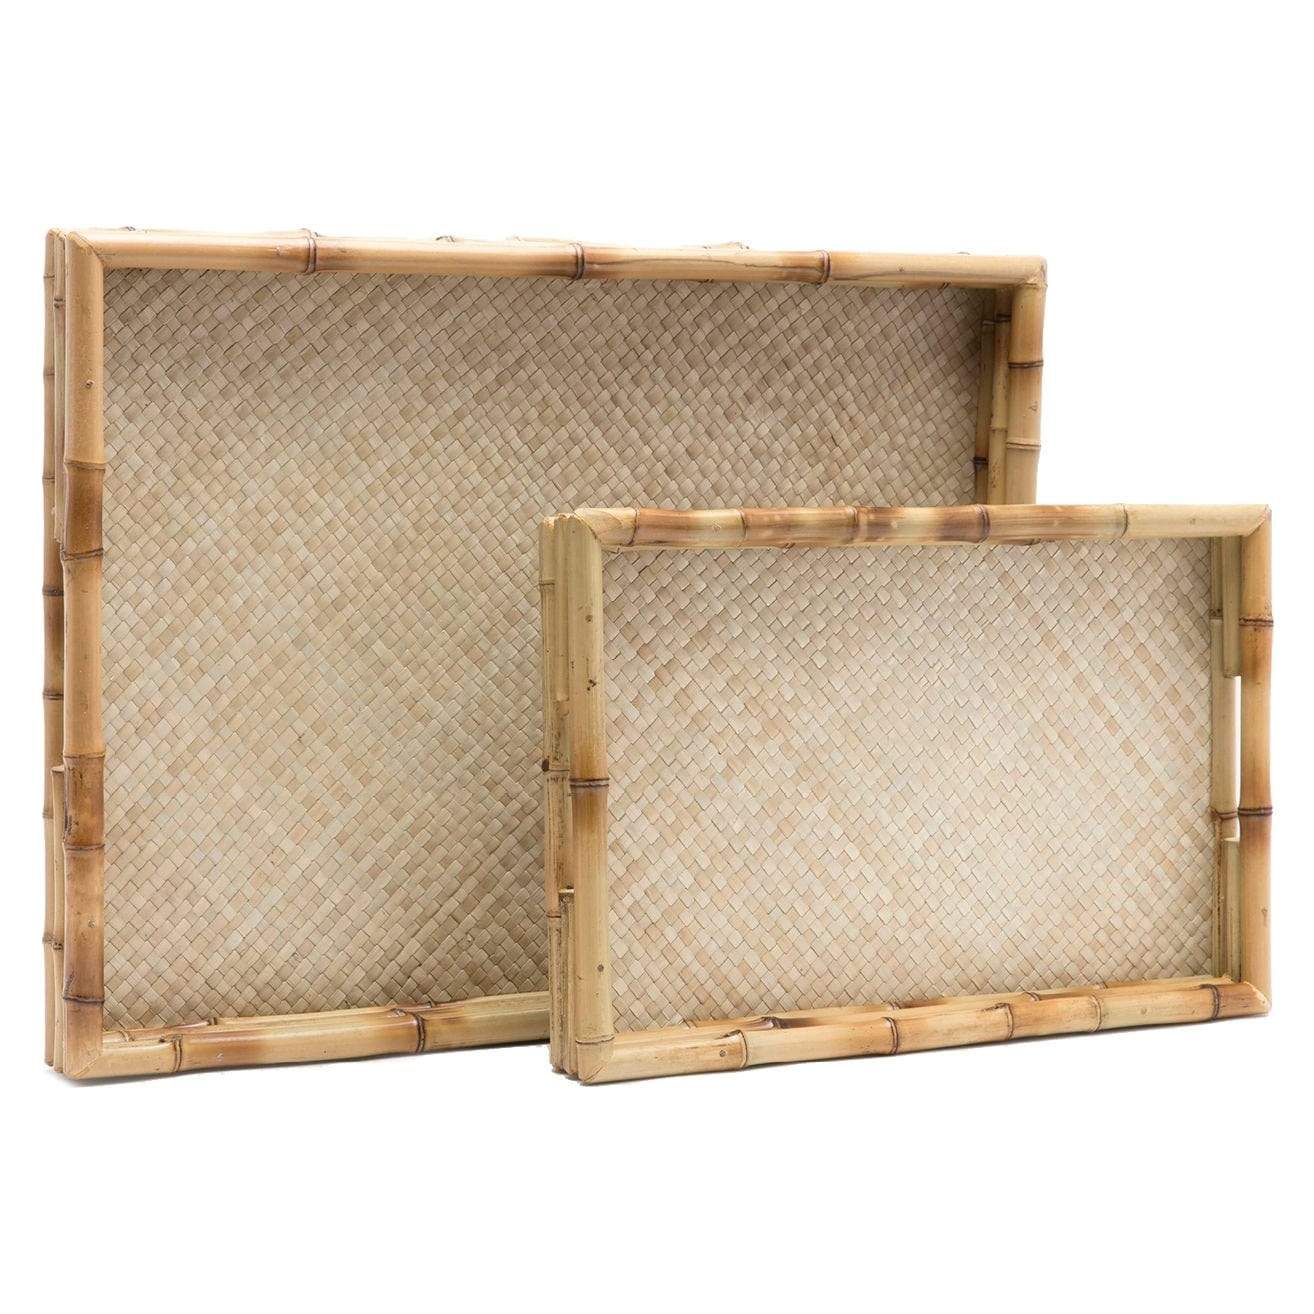 Dulcy Bamboo Tray Set